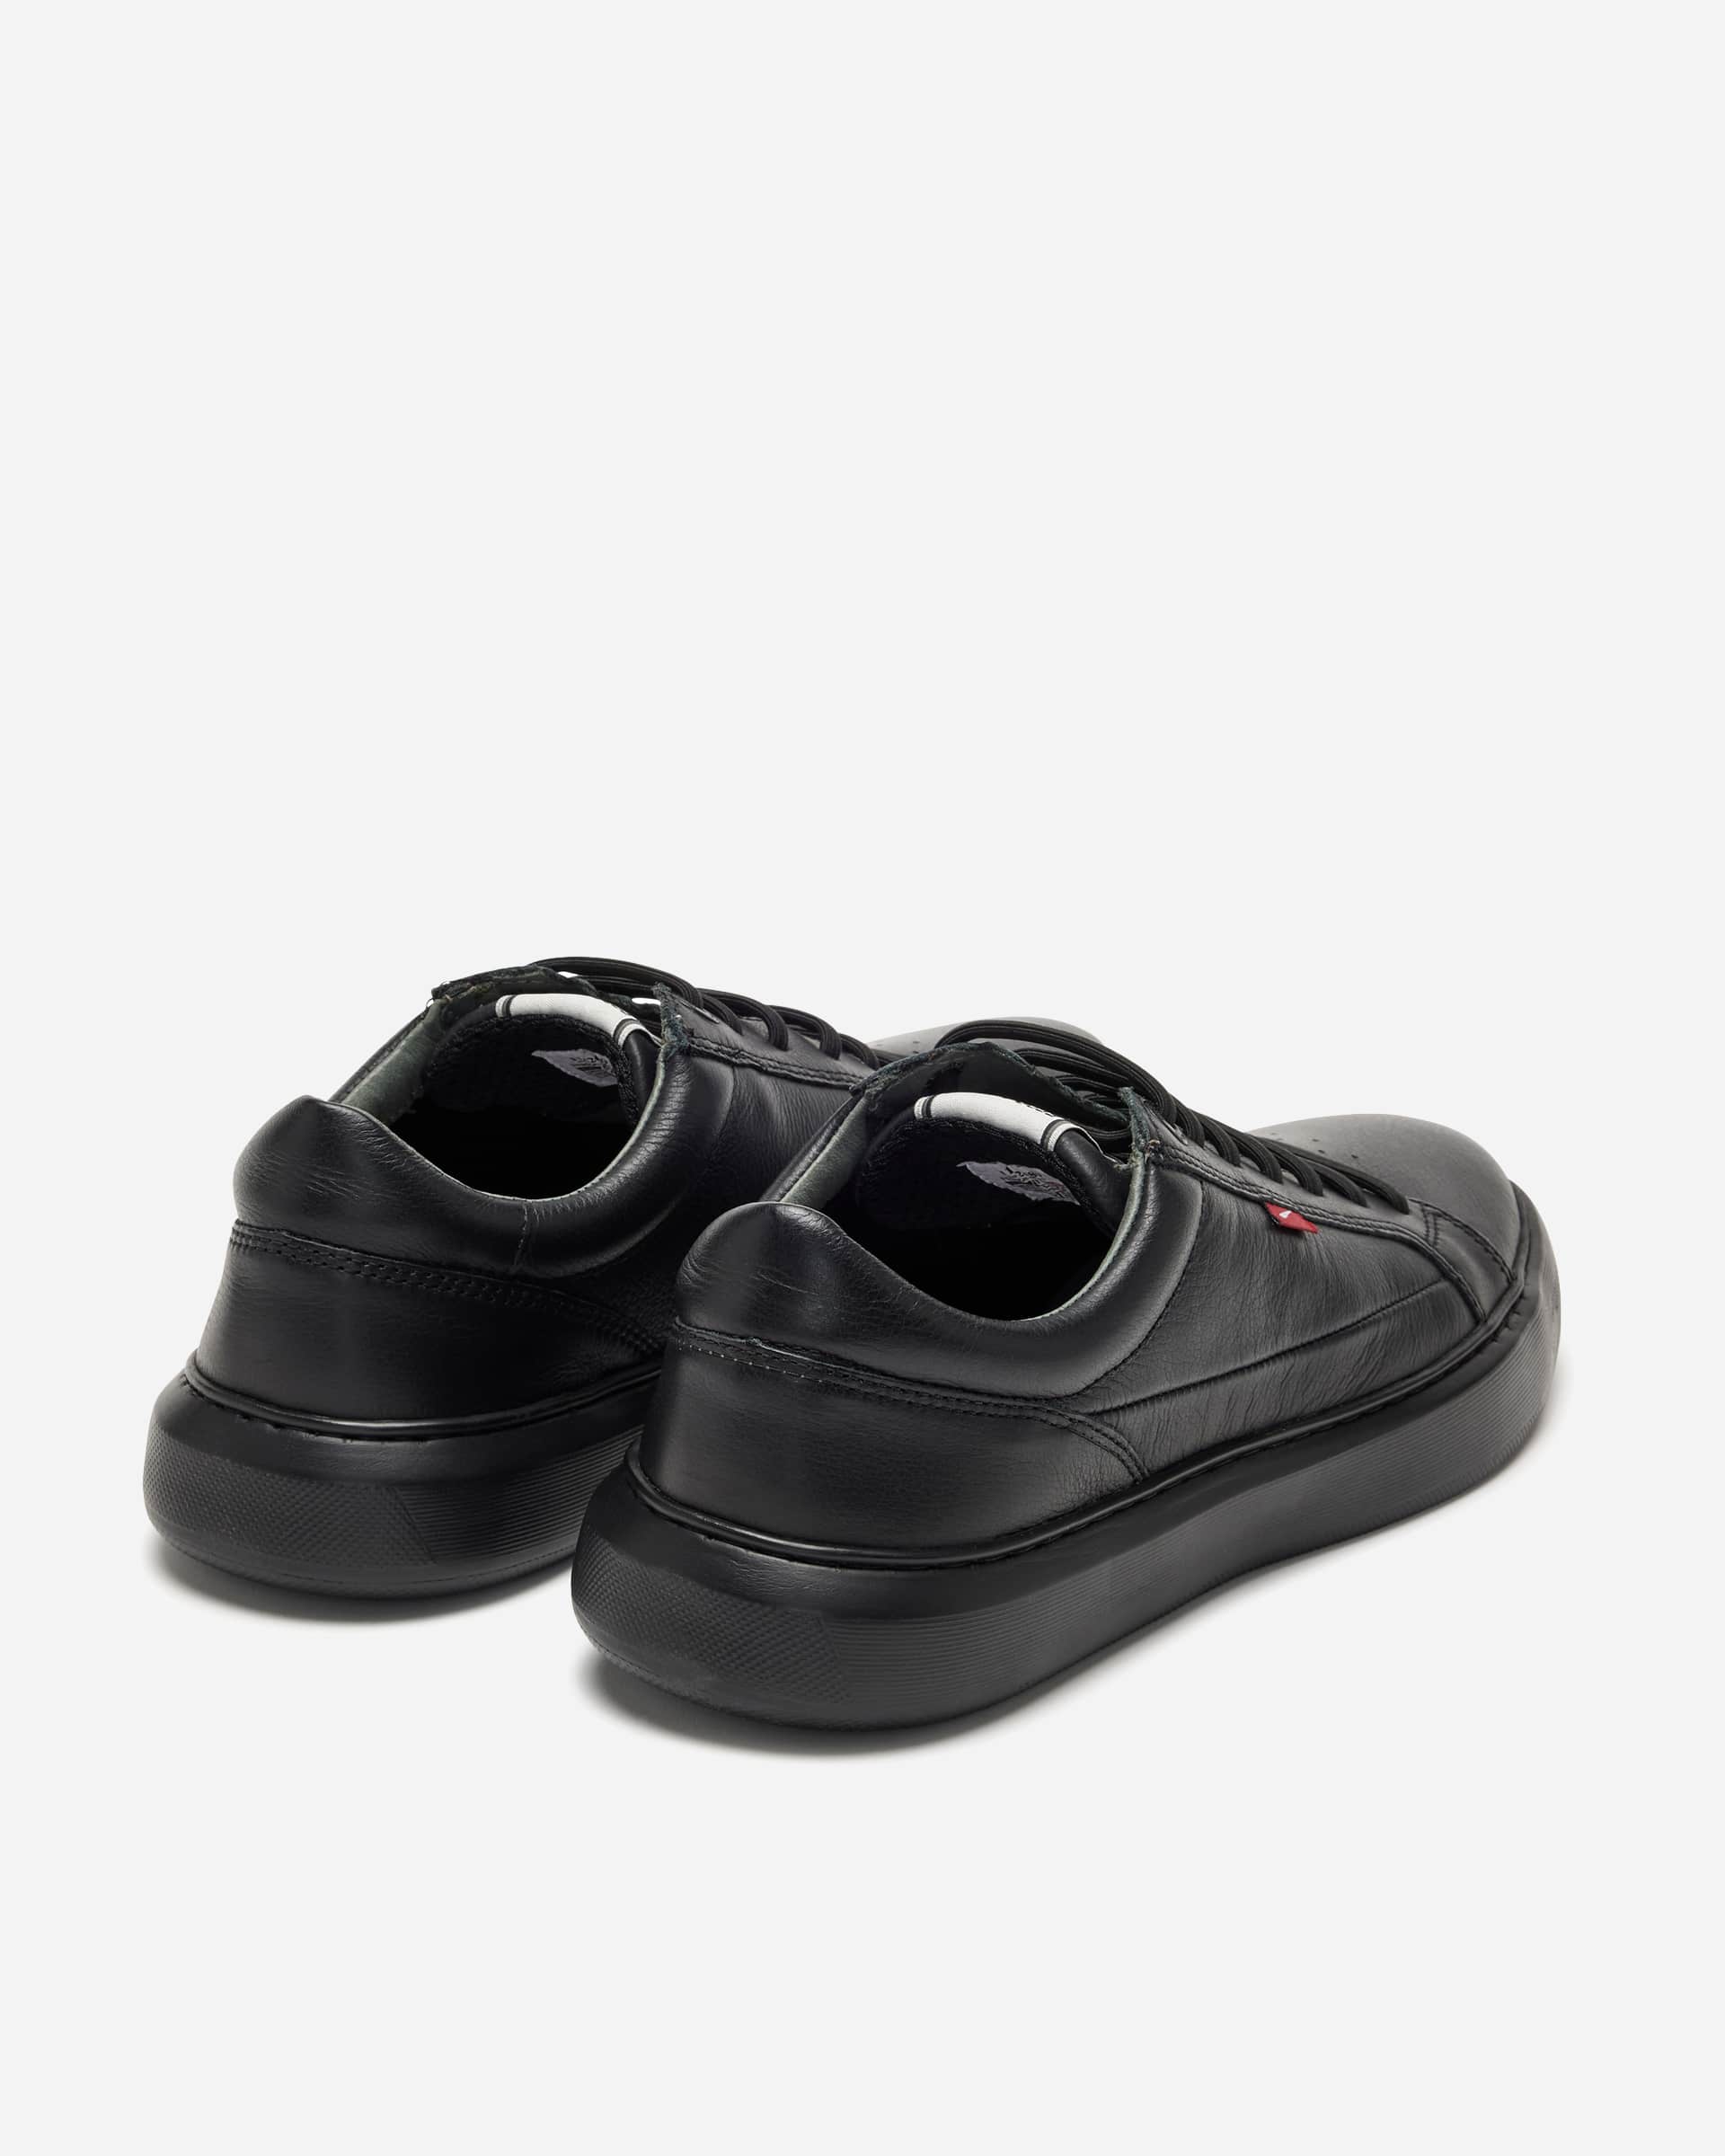 Salvador Black Sneaker - Men's Shoes at Menzclub